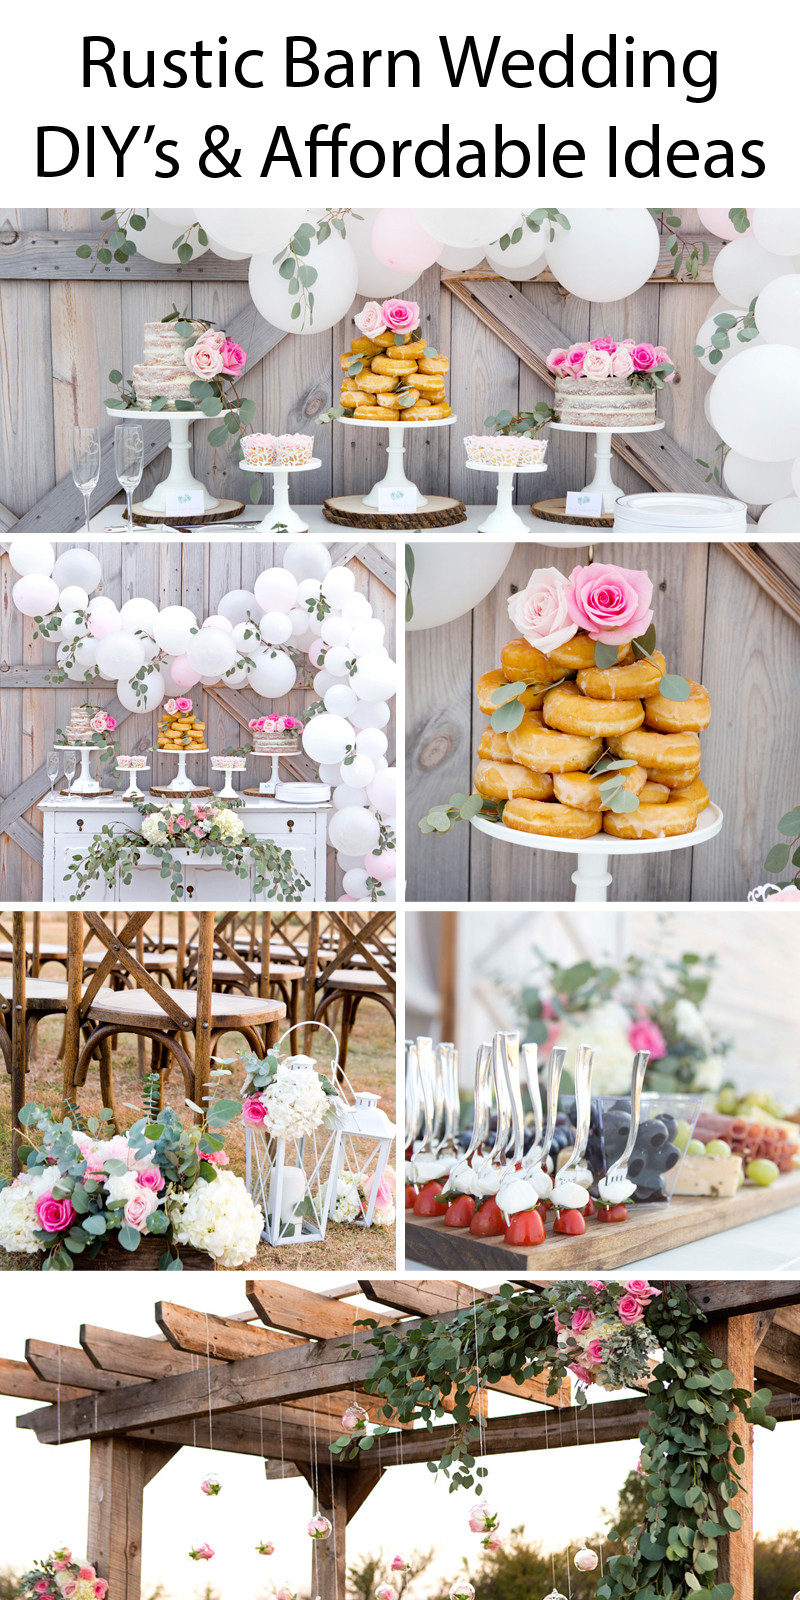 Best ideas about Rustic Wedding Ideas DIY
. Save or Pin Rustic Barn Wedding Ideas Bud Friendly Wedding Pink Now.